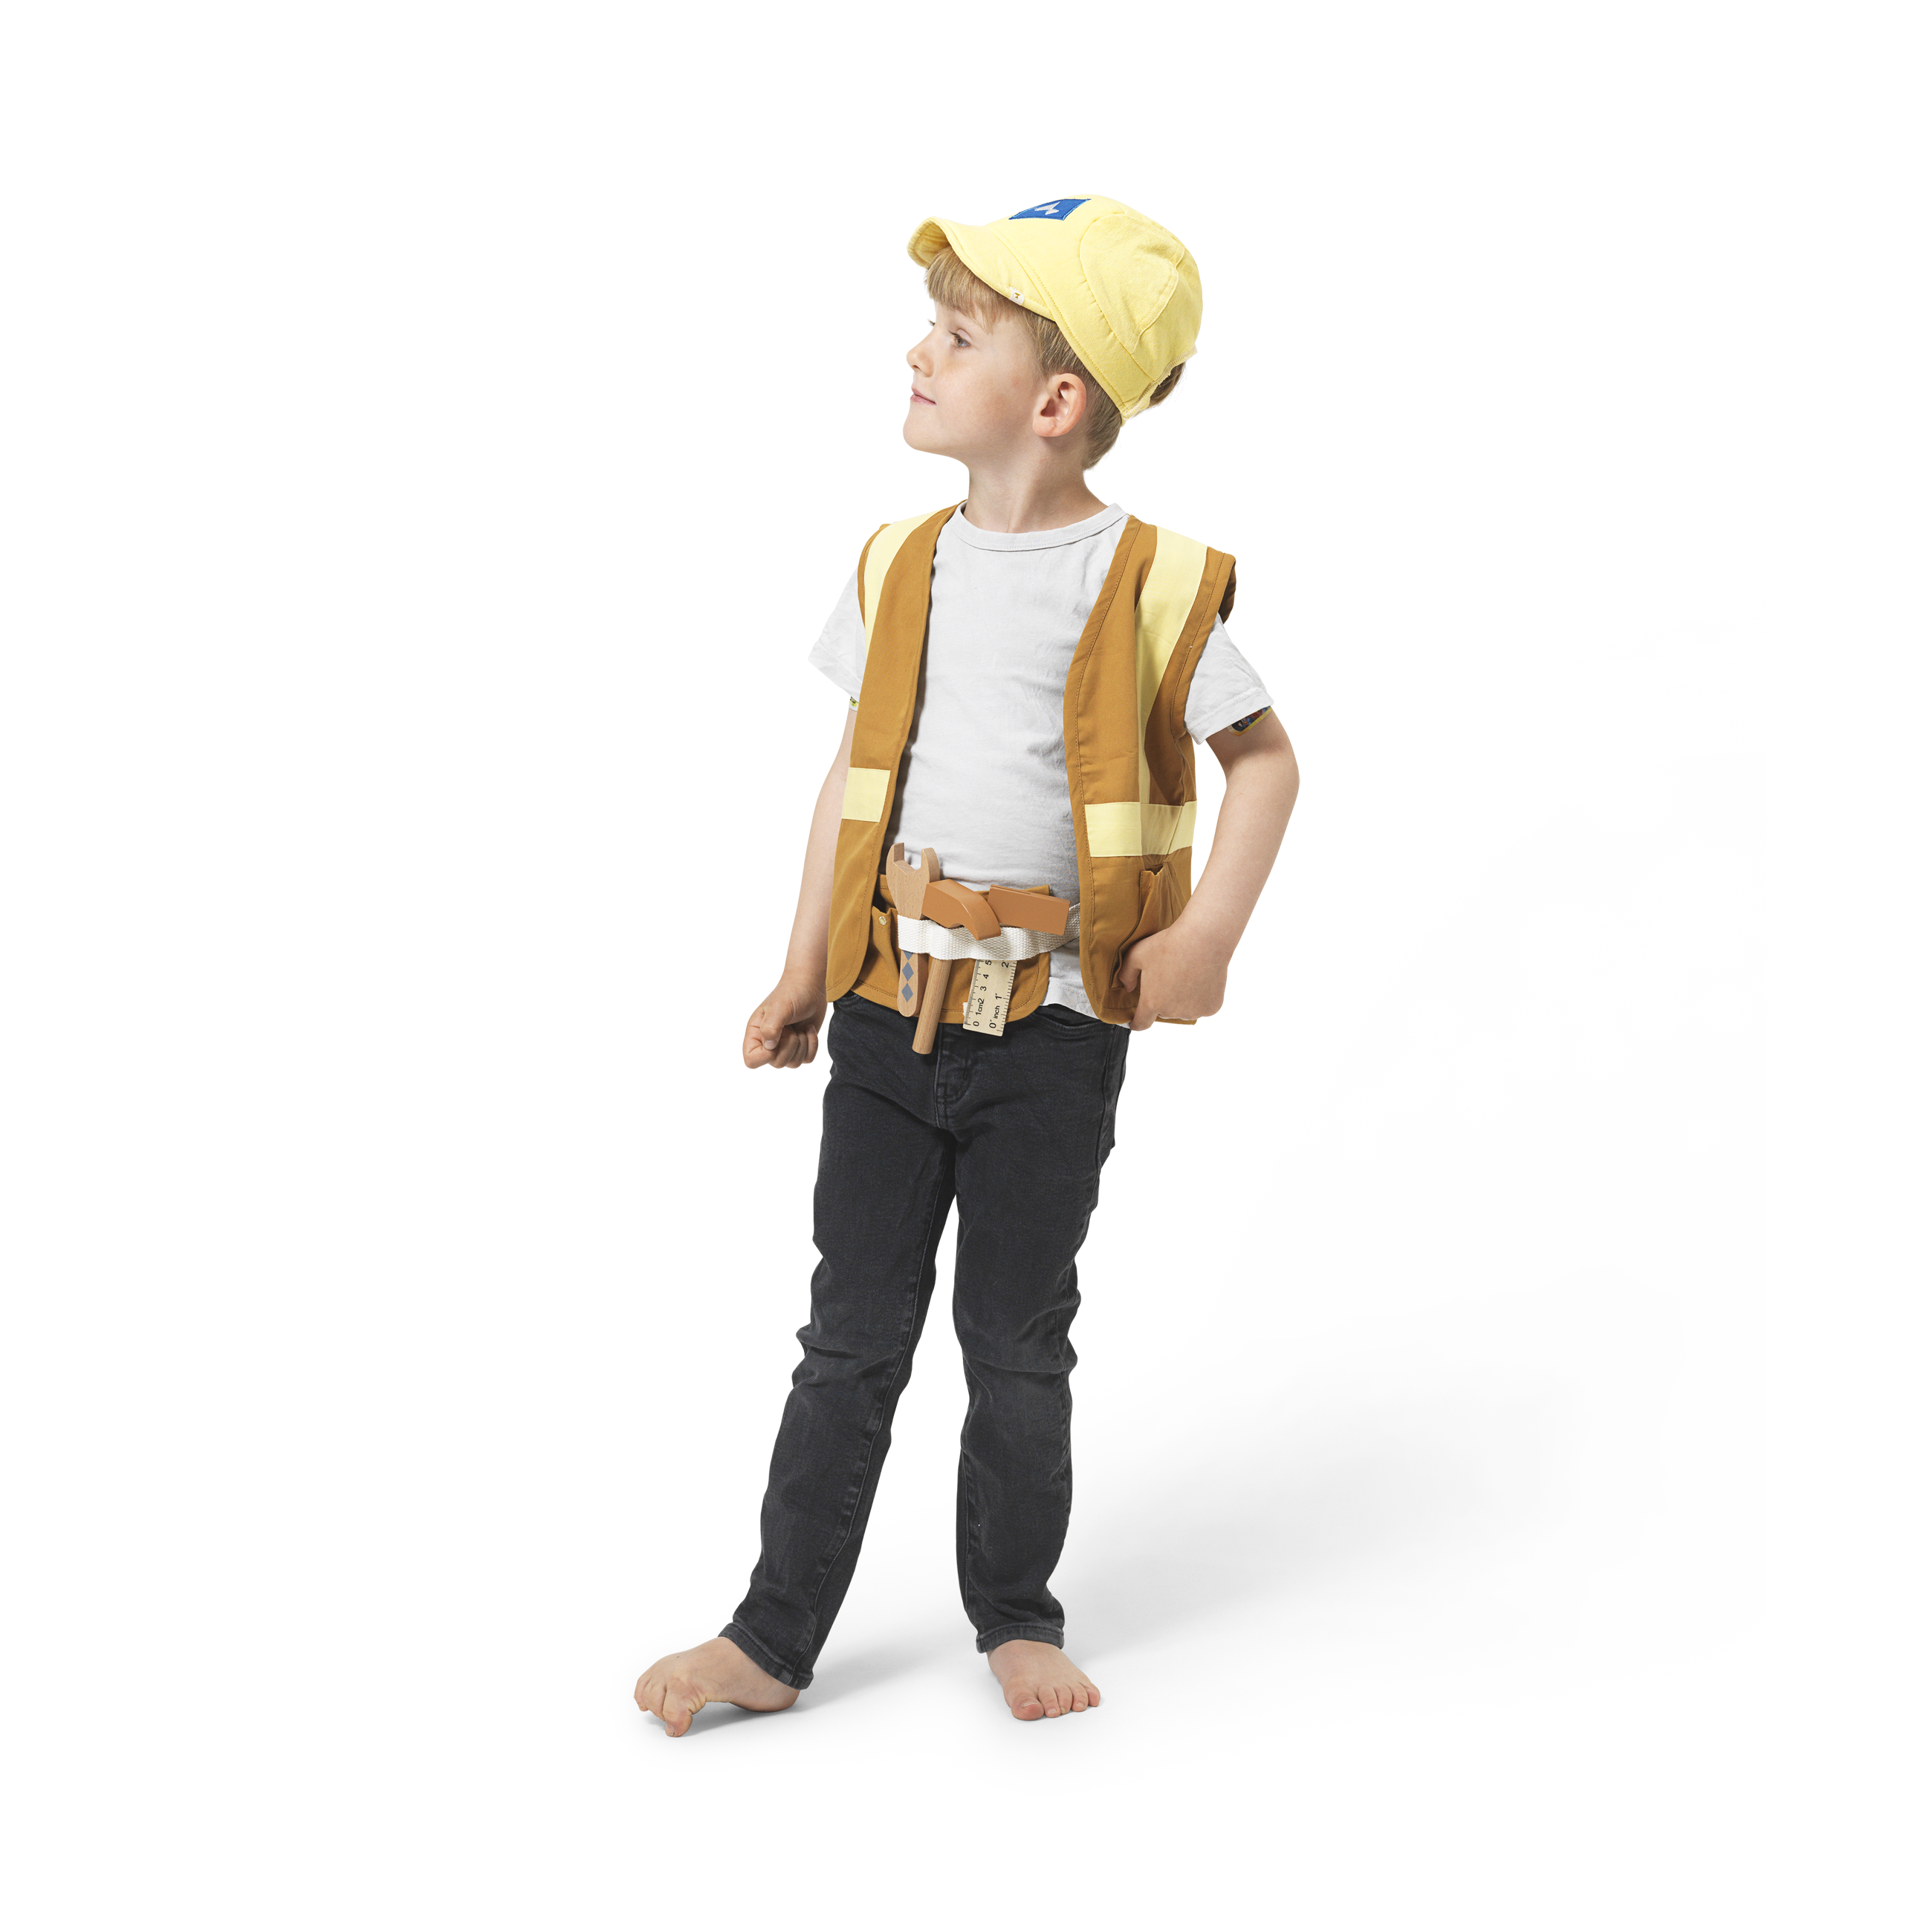 Bauarbeiter Kostüm aus Biobaumwolle - für 3-6 Jährige